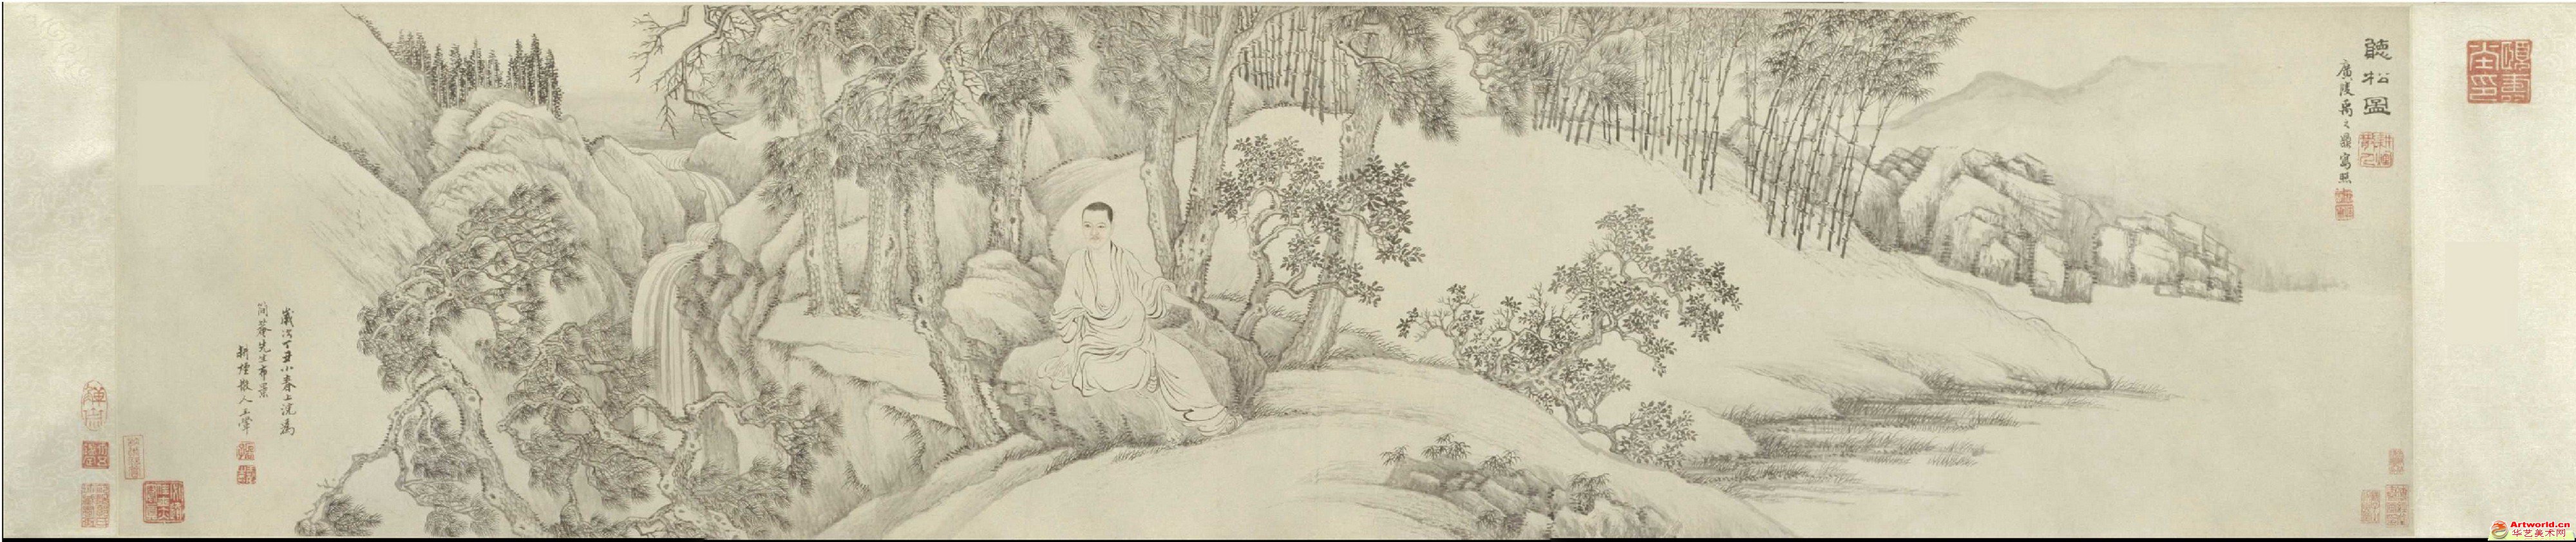 清 禹之鼎、王翬《李图南听松图像》